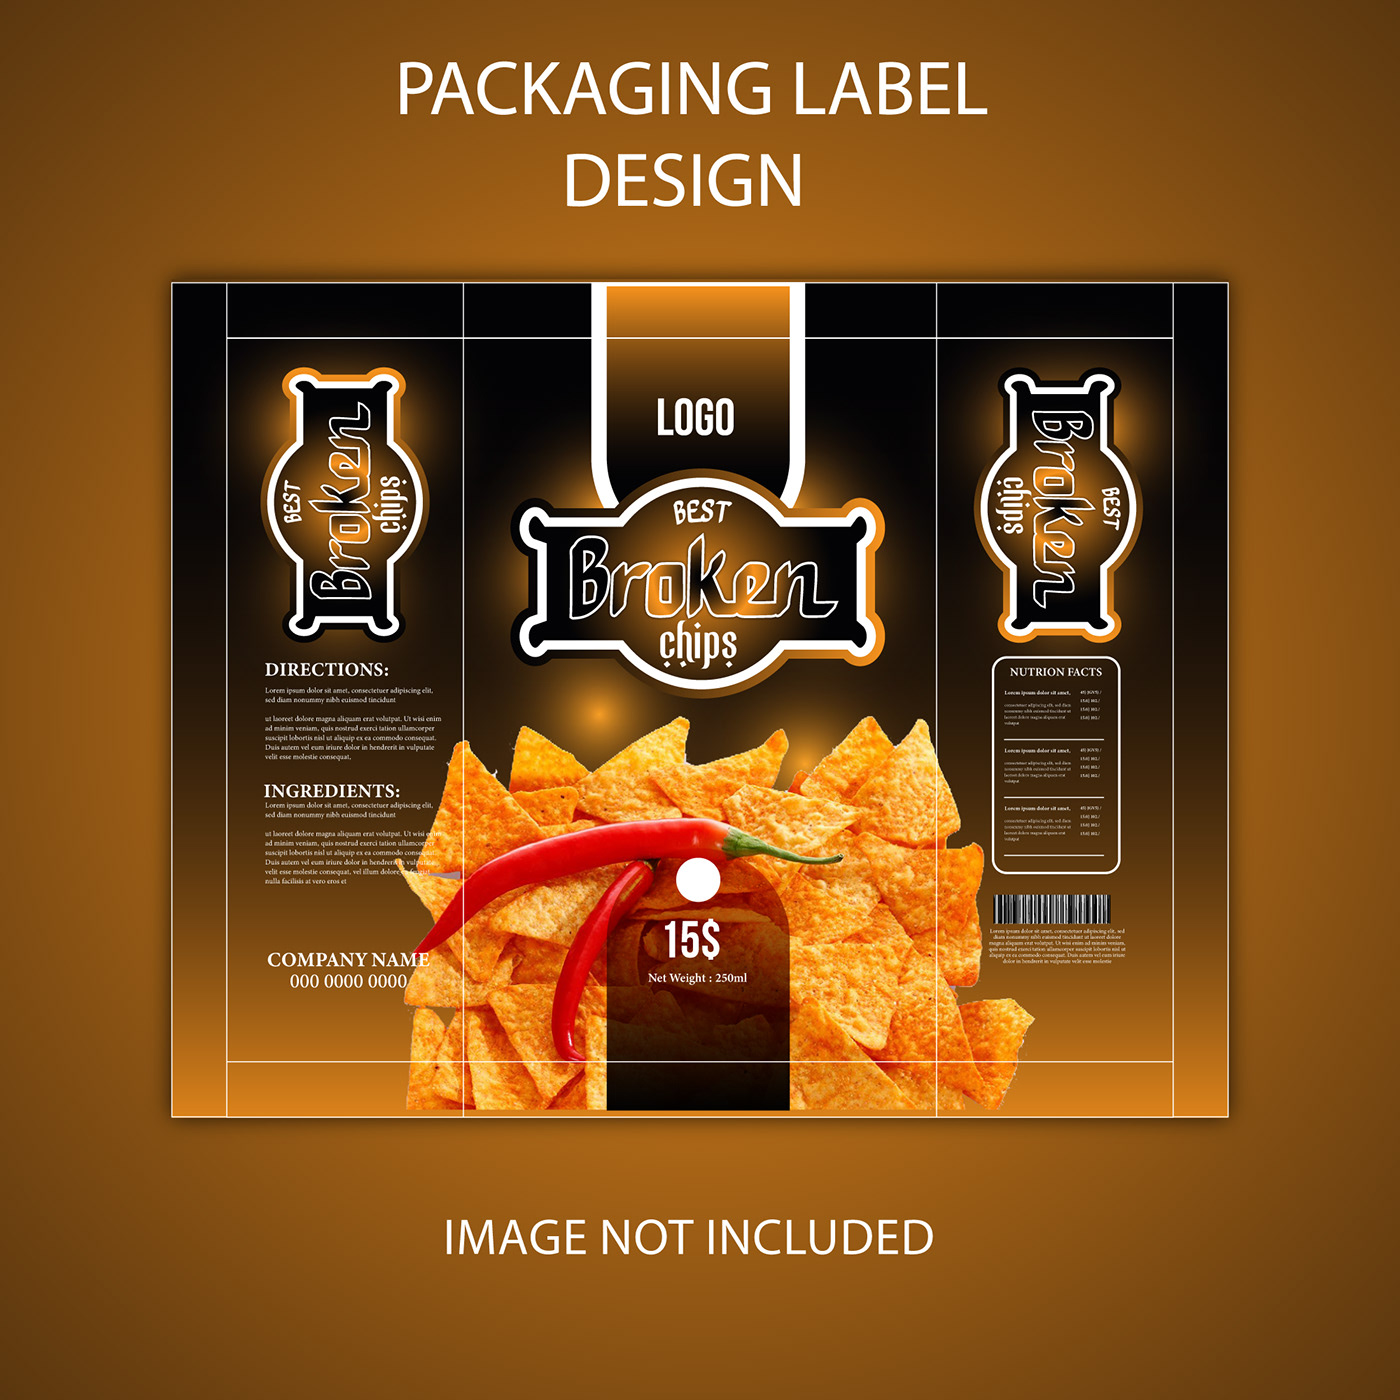 Packaging product design  Label label design product packaging bottle label design box packaging package design  Food  Social media post